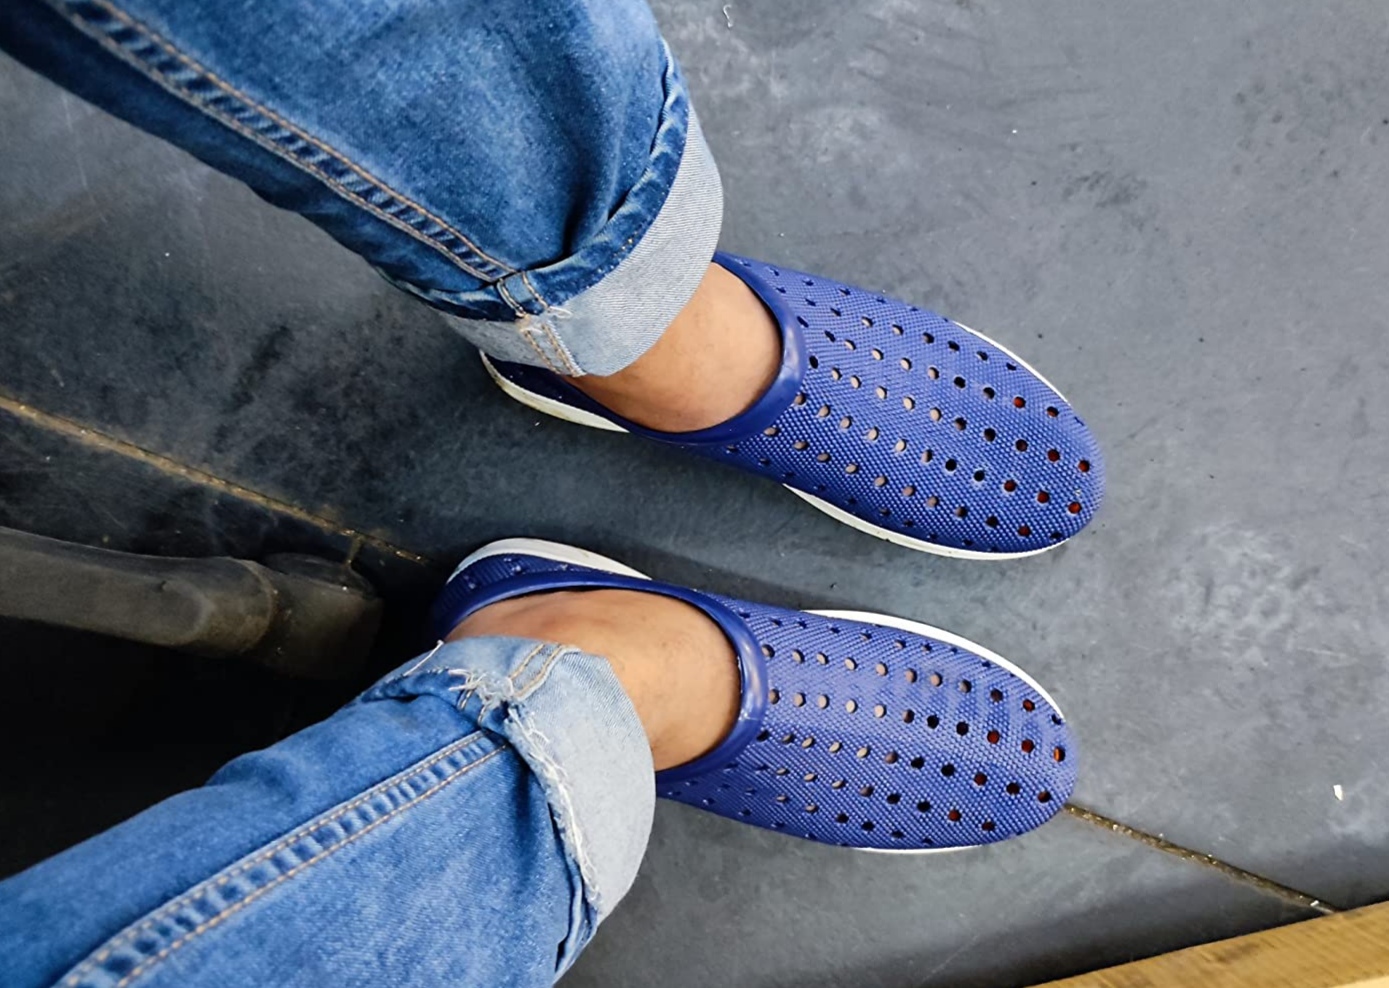 Bata-rain-shoes-in-blue-color